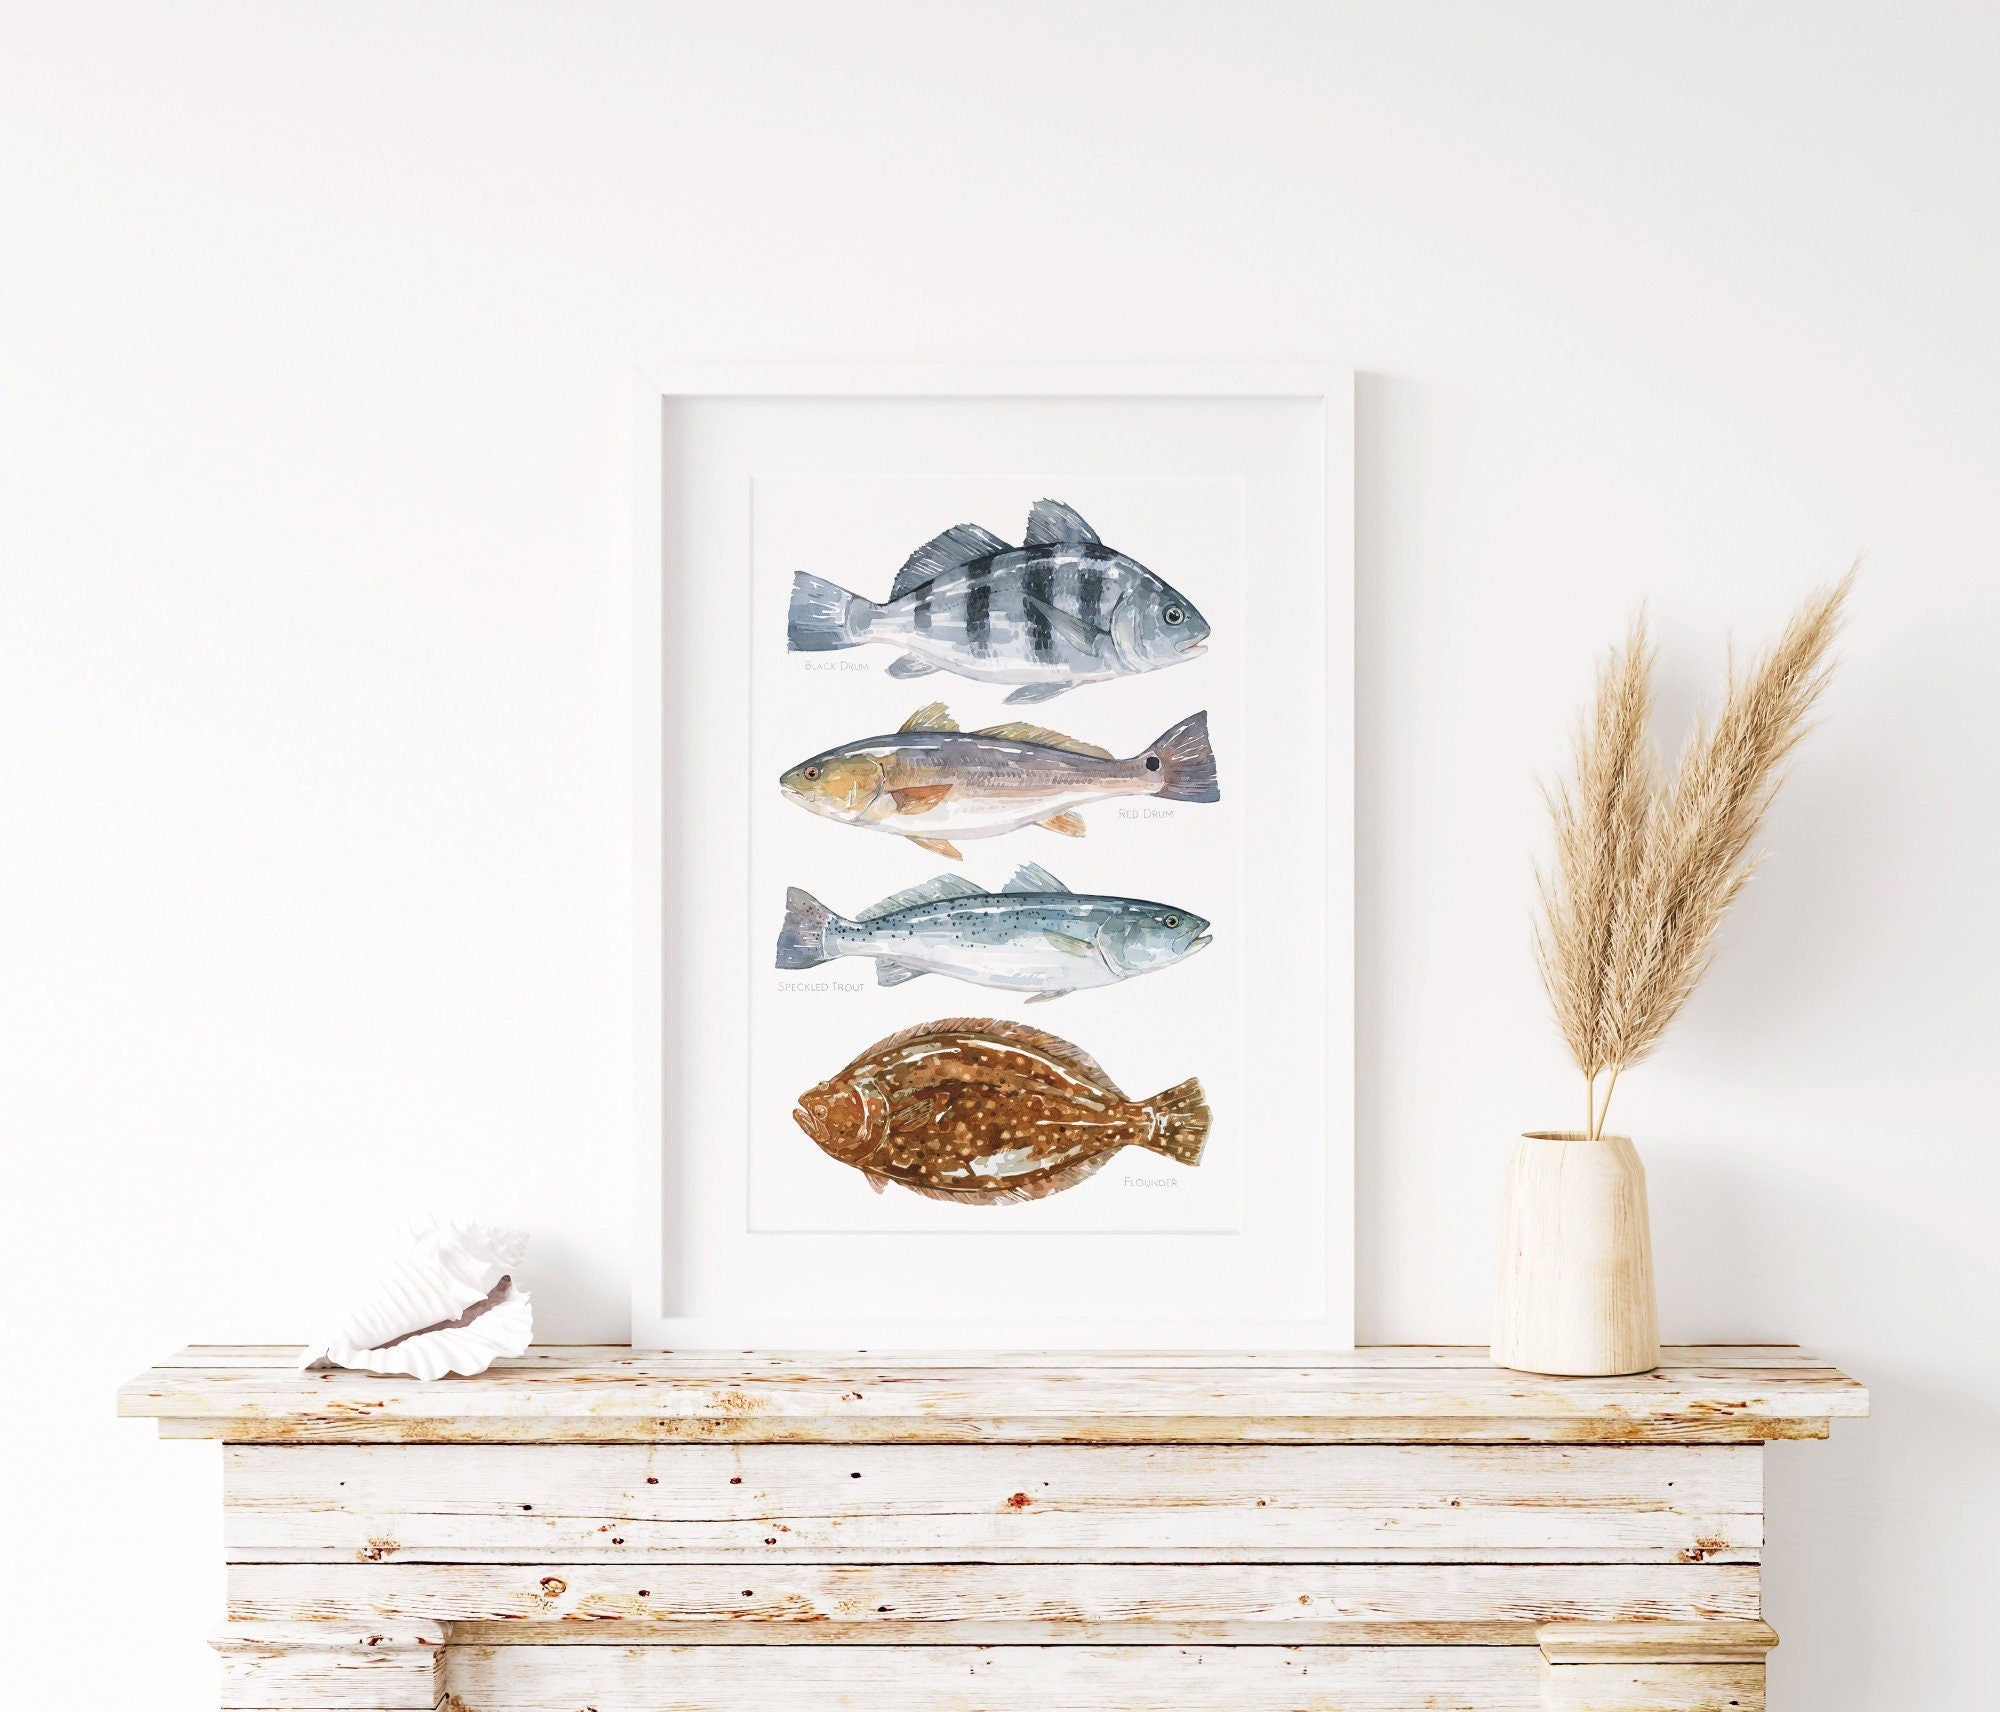 Ocean Fish Art Print, Saltwater Inshore Fish Watercolor